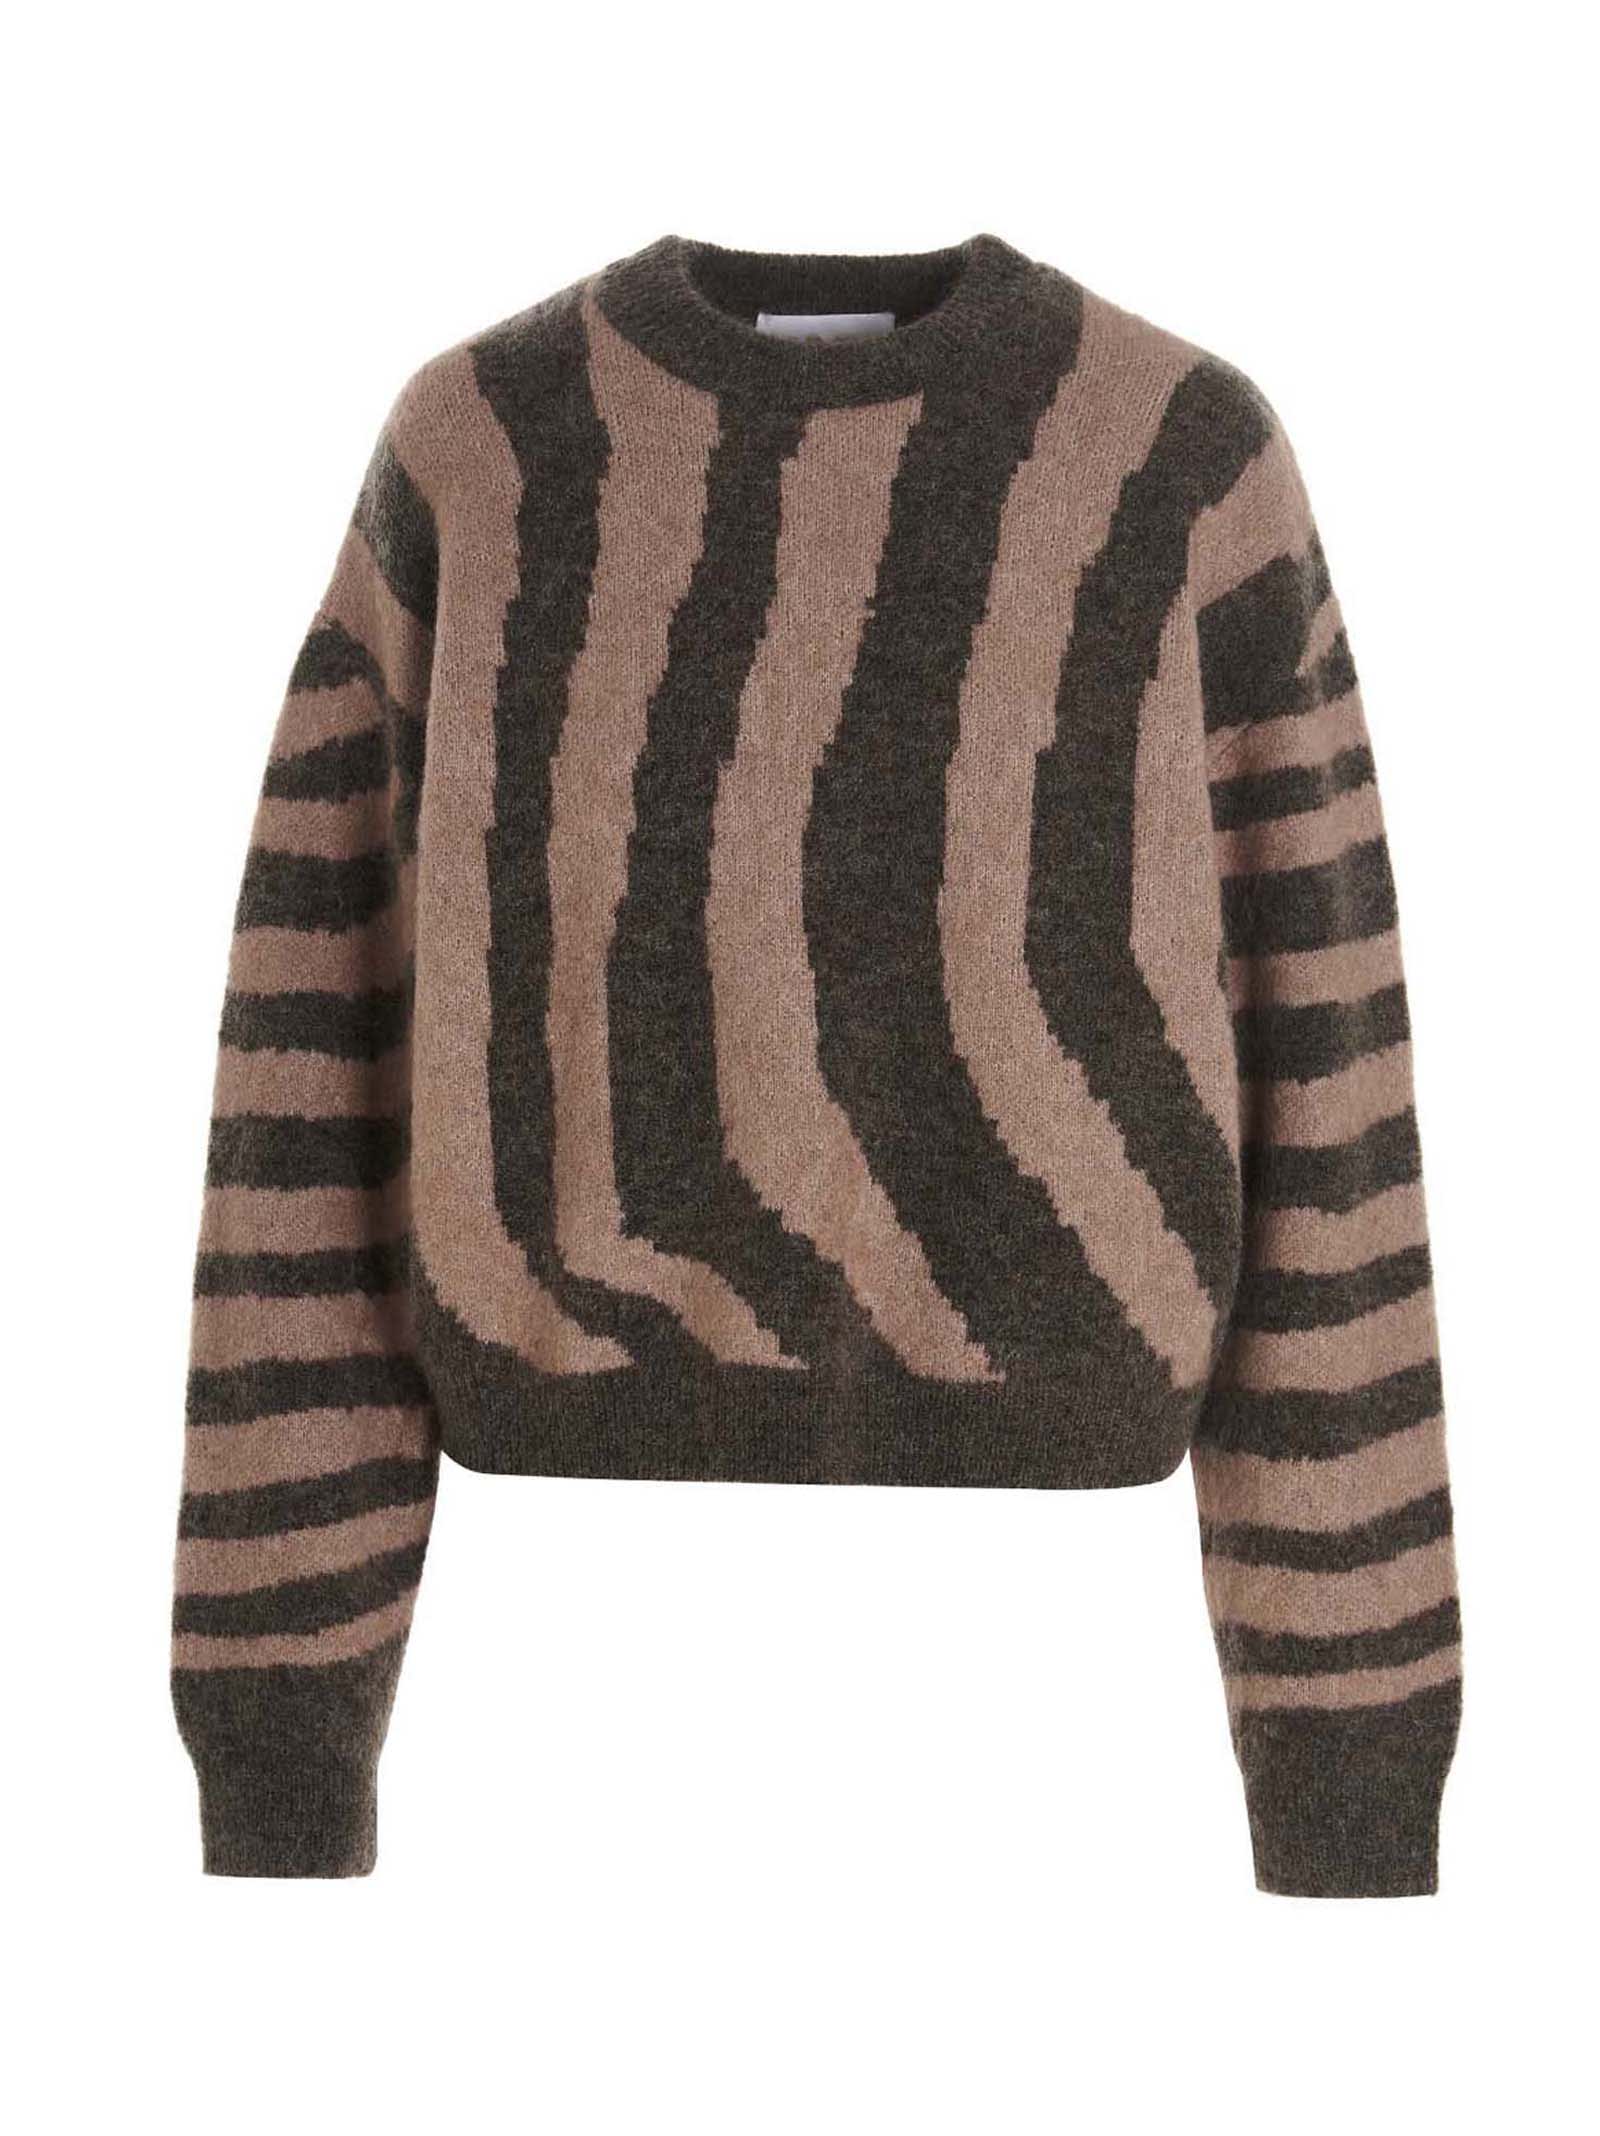 Remain Birger Christensen cami Sweater